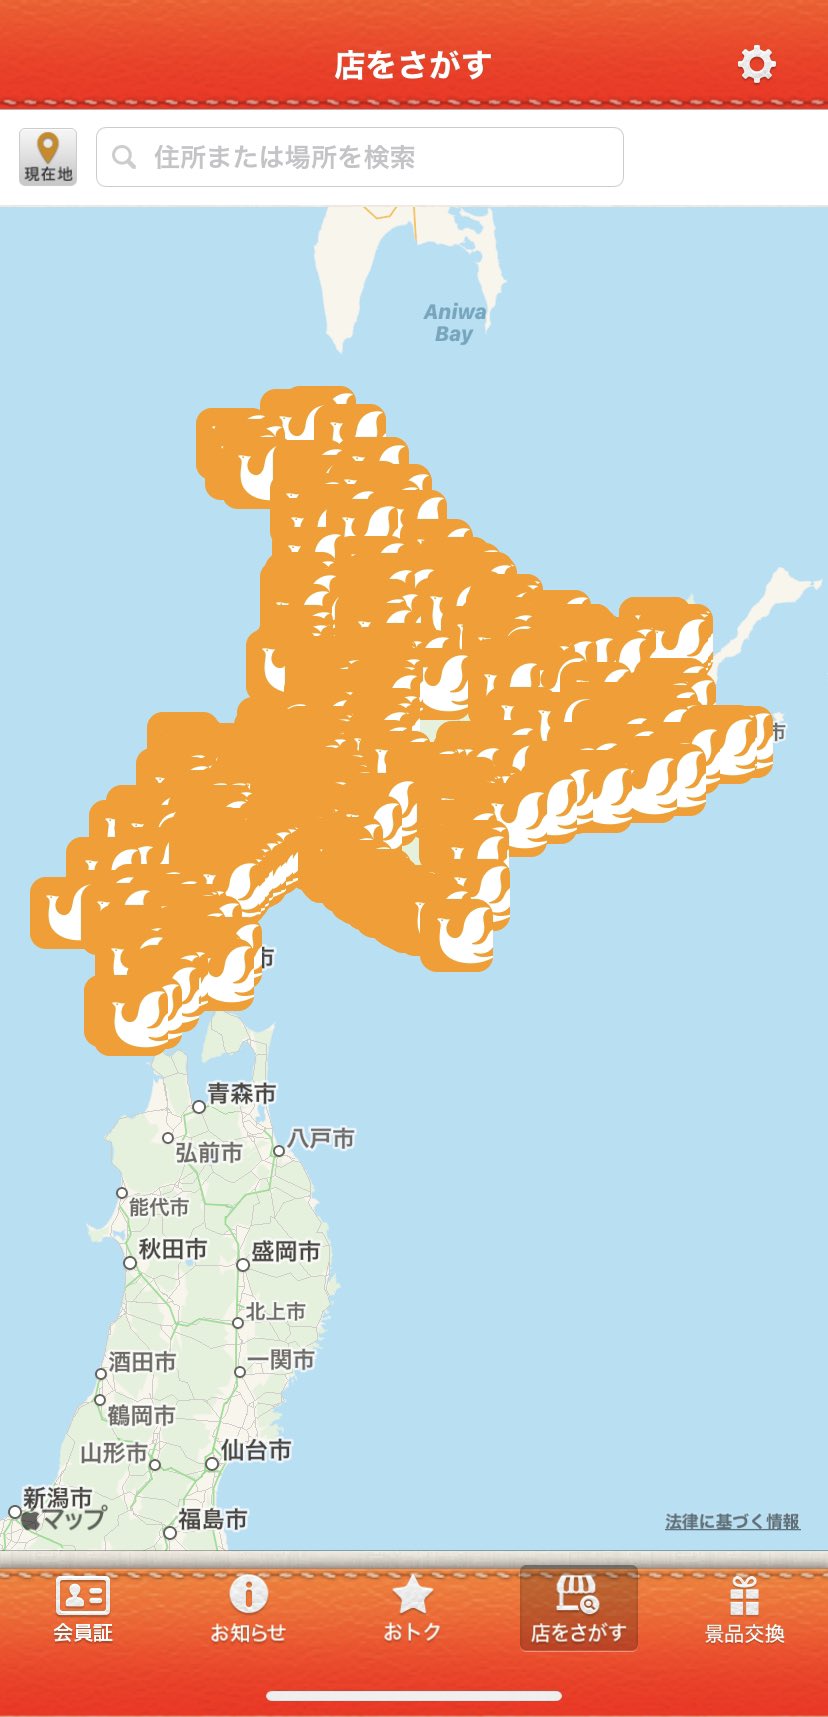 咲来さん 新ユニホーム誕生 セイコーマートのアプリの店舗検索を見ると セイコーマートのマークだけで北海道地図が出来上がるのはもっと広めていきたい T Co Aqcmnnfczj Twitter